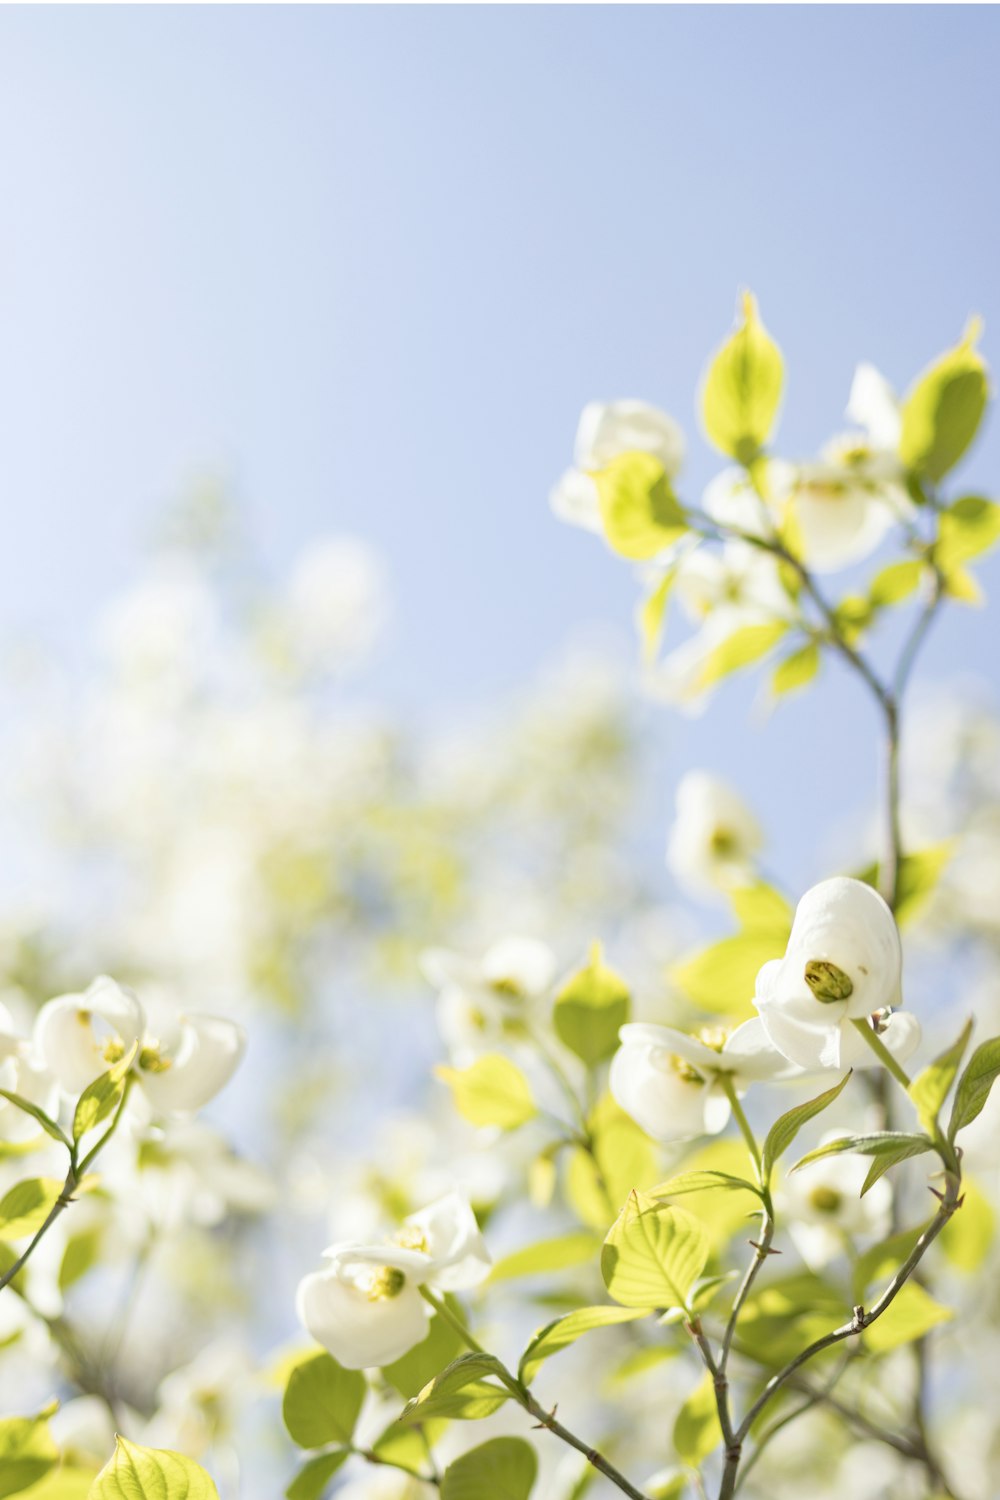 흰 꽃의 선택적 초점 사진